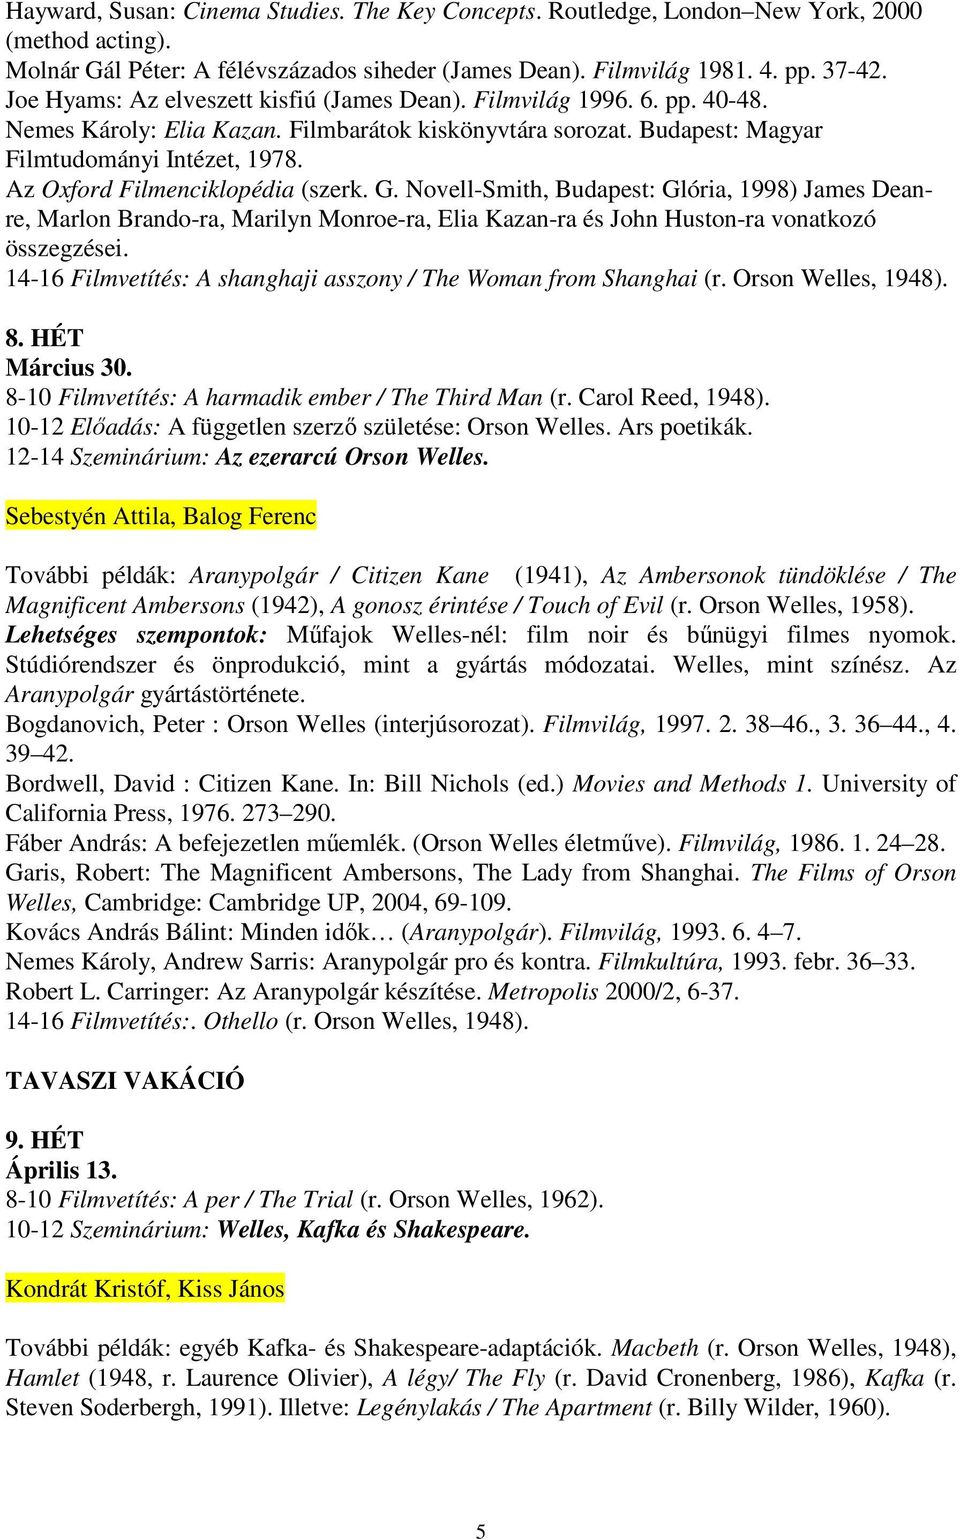 Az Oxford Filmenciklopédia (szerk. G. Novell-Smith, Budapest: Glória, 1998) James Deanre, Marlon Brando-ra, Marilyn Monroe-ra, Elia Kazan-ra és John Huston-ra vonatkozó összegzései.